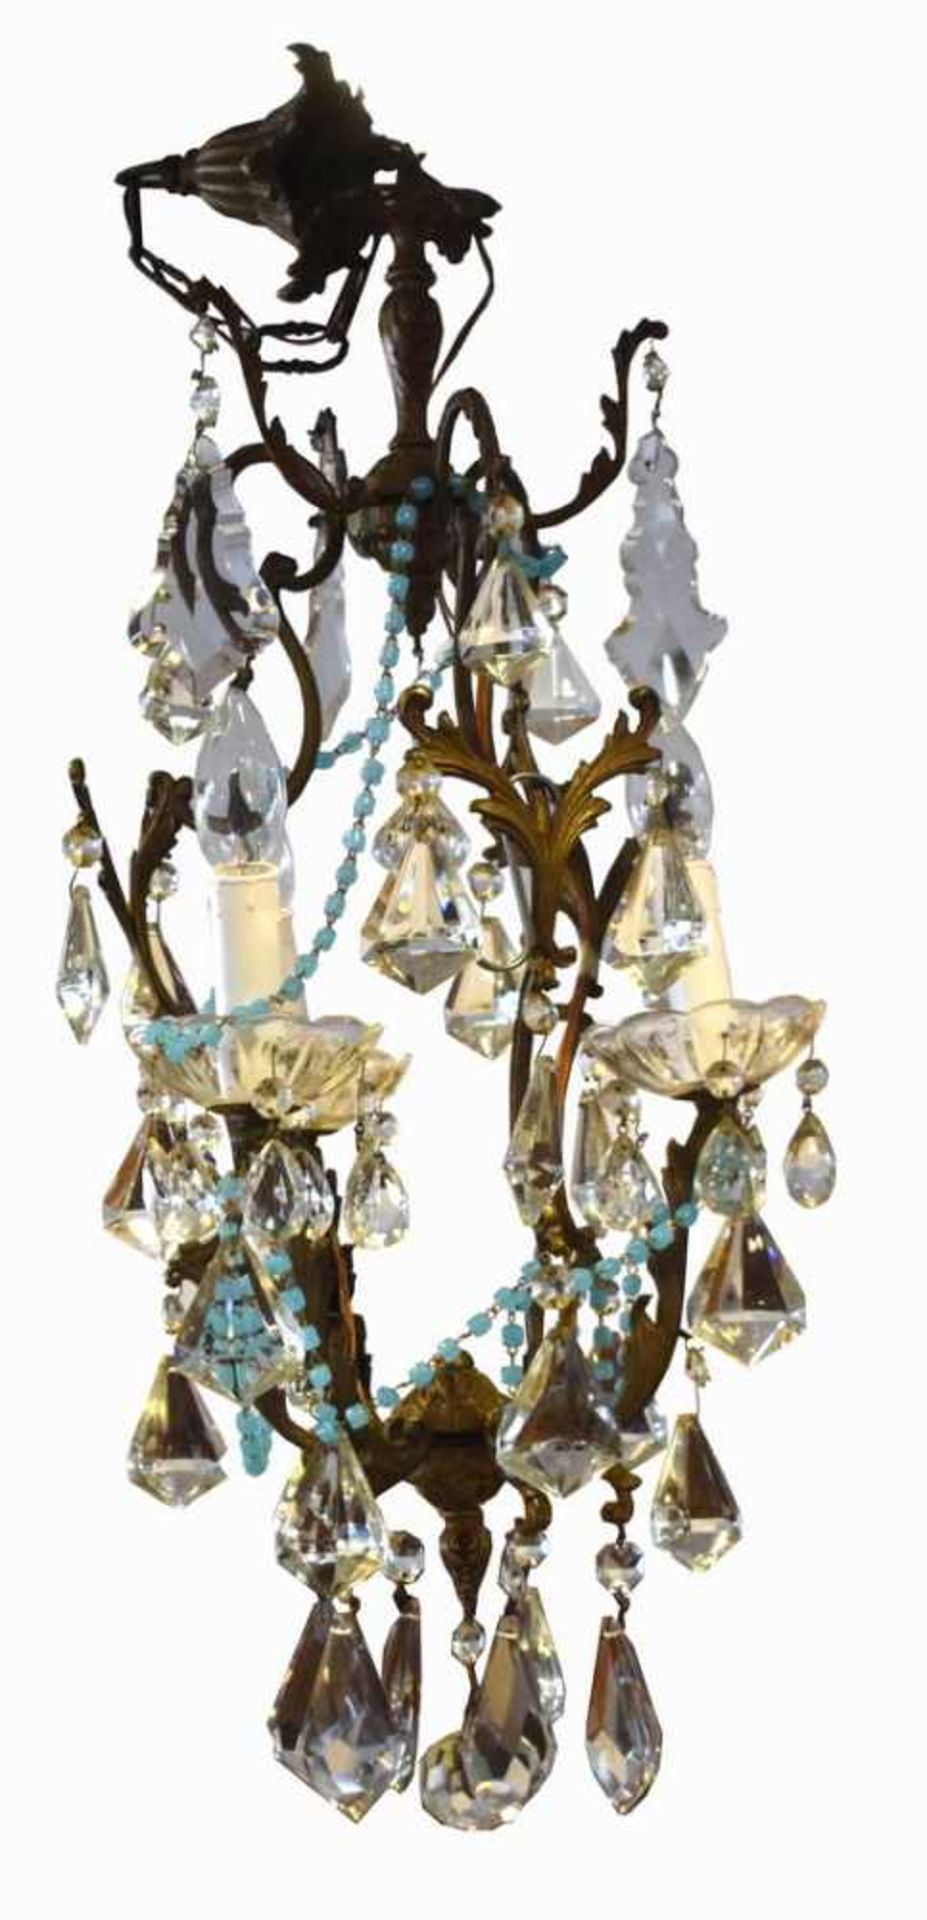 Deckenlampe2-lichtig, Messing, verziert, mit farbl. Glasgehänge, H ca. 90 cm